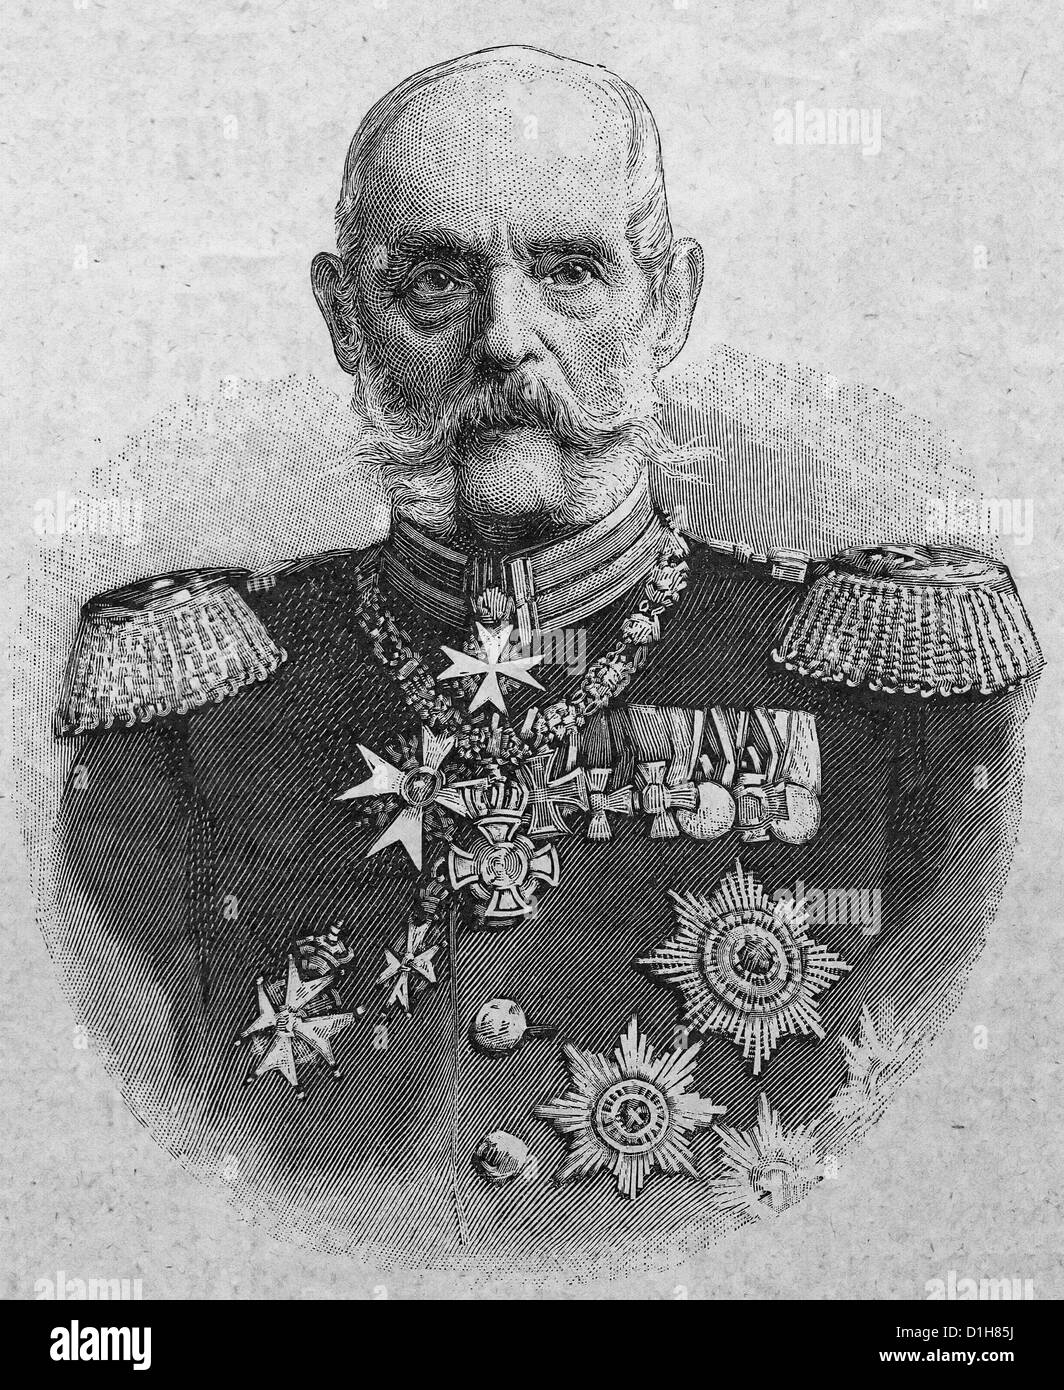 Allgemeinen Von Pape - Alexander August Wilhelm von Pape (2. Februar 1813 – 7. Mai 1895) wurde eine königliche preußische Infanterie Generaloberst mit den besonderen Rang der Brandenburgische. Stockfoto